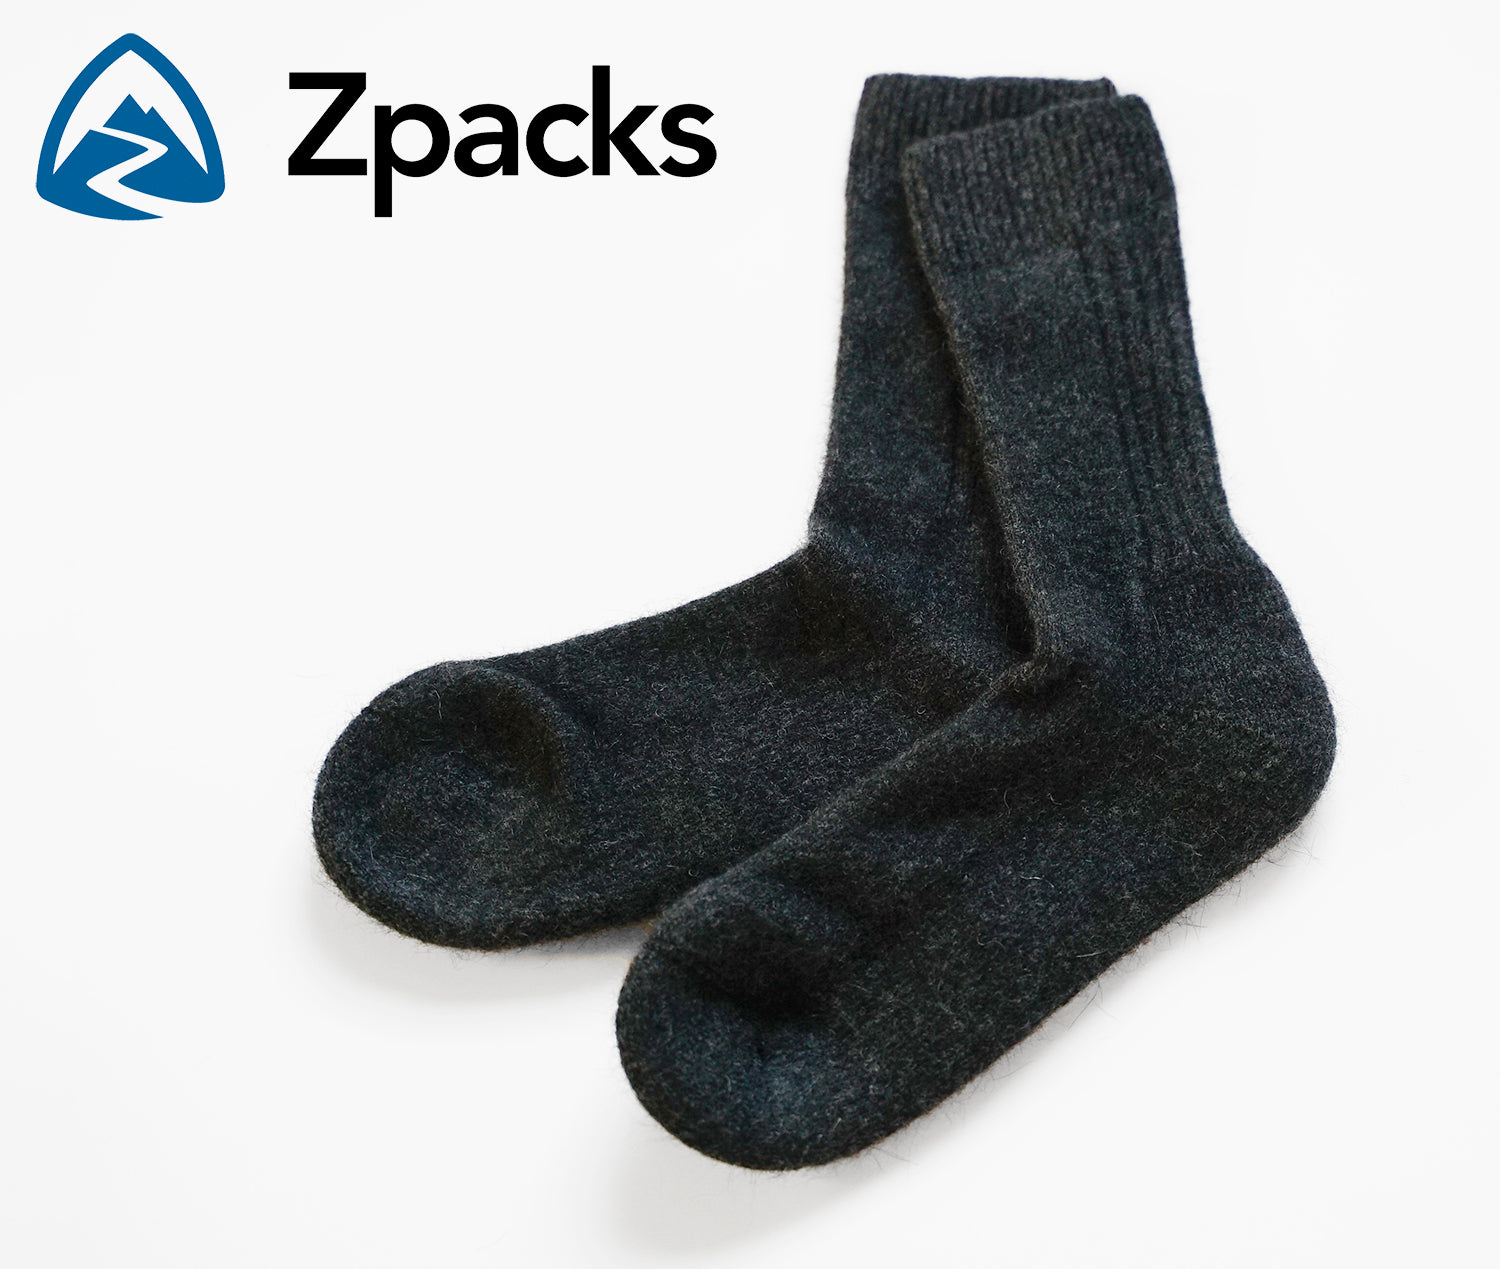 Zpacks Brushtail Possum Socks / Zパック ブラッシュテイルポッサムソックス